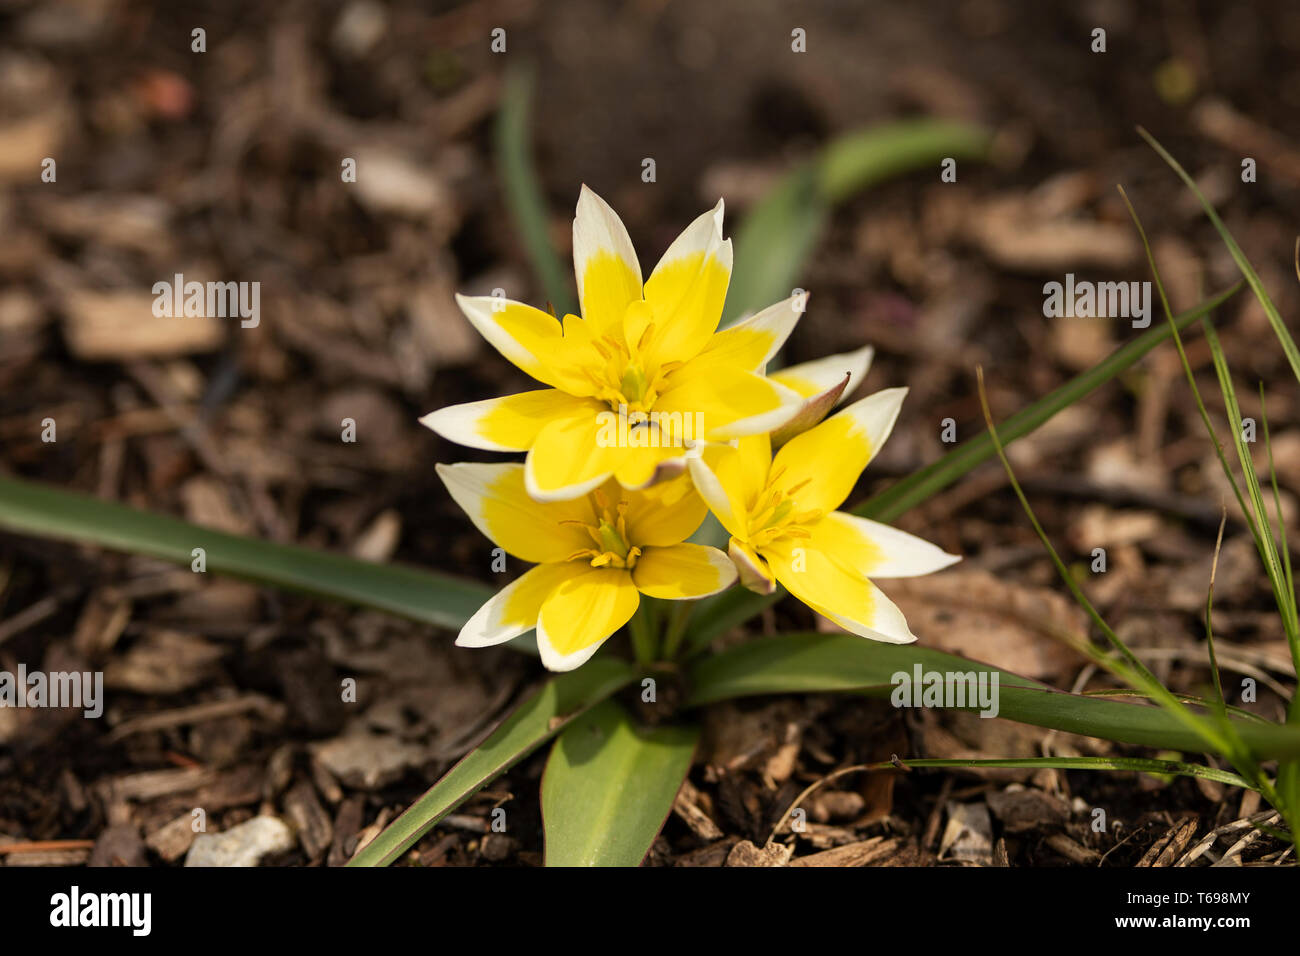 Späte Tulpe (Tulipa tarda) oder Tarda-Tulpe, in Zentralasien heimisch, blüht im Frühjahr. Die gelben Kronblätter haben weiße Spitzen. Stockfoto